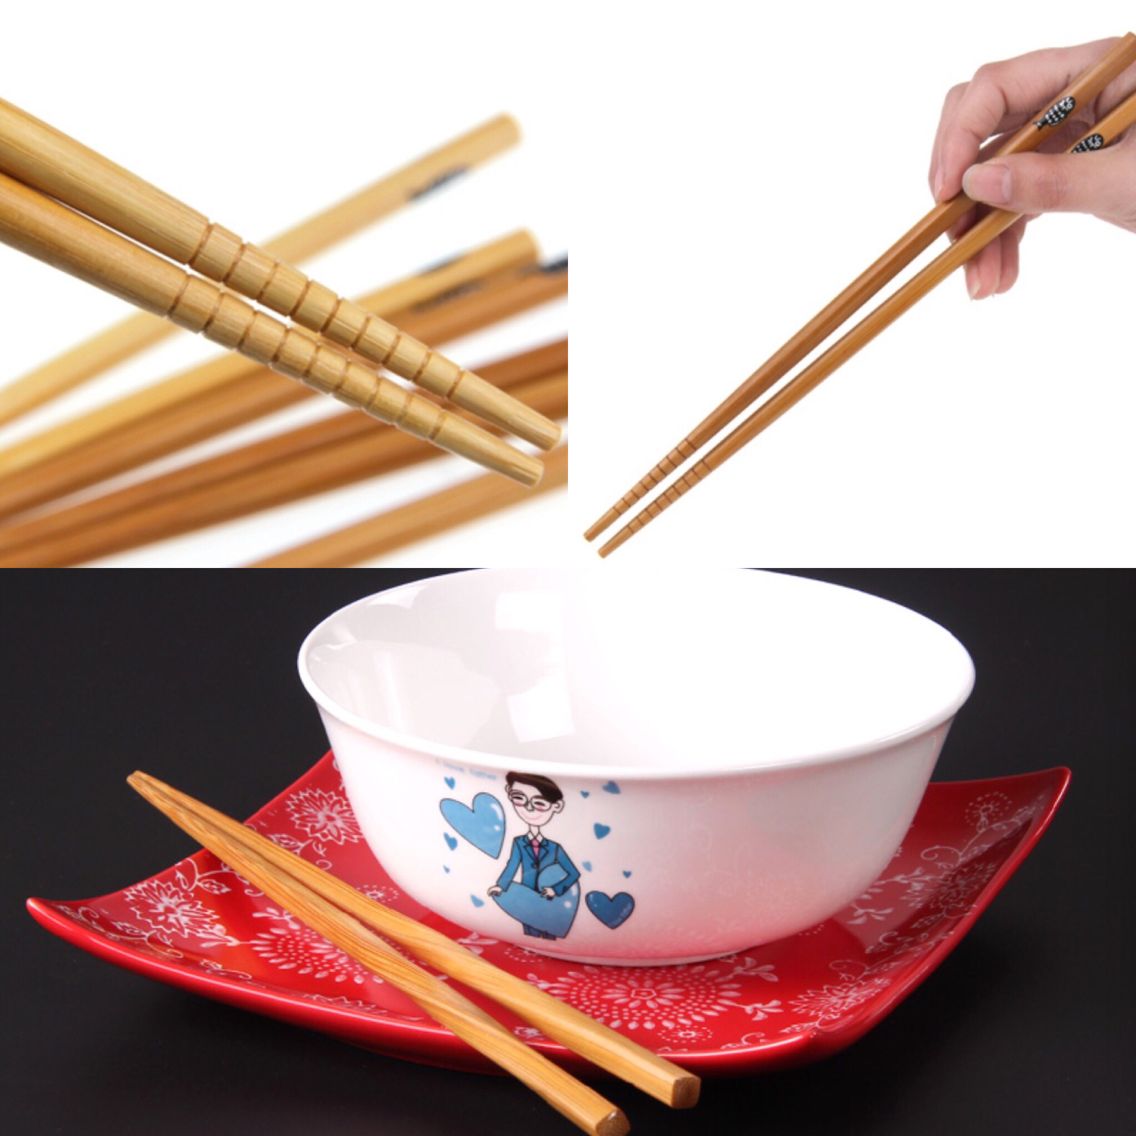 Sky blue chopsticks